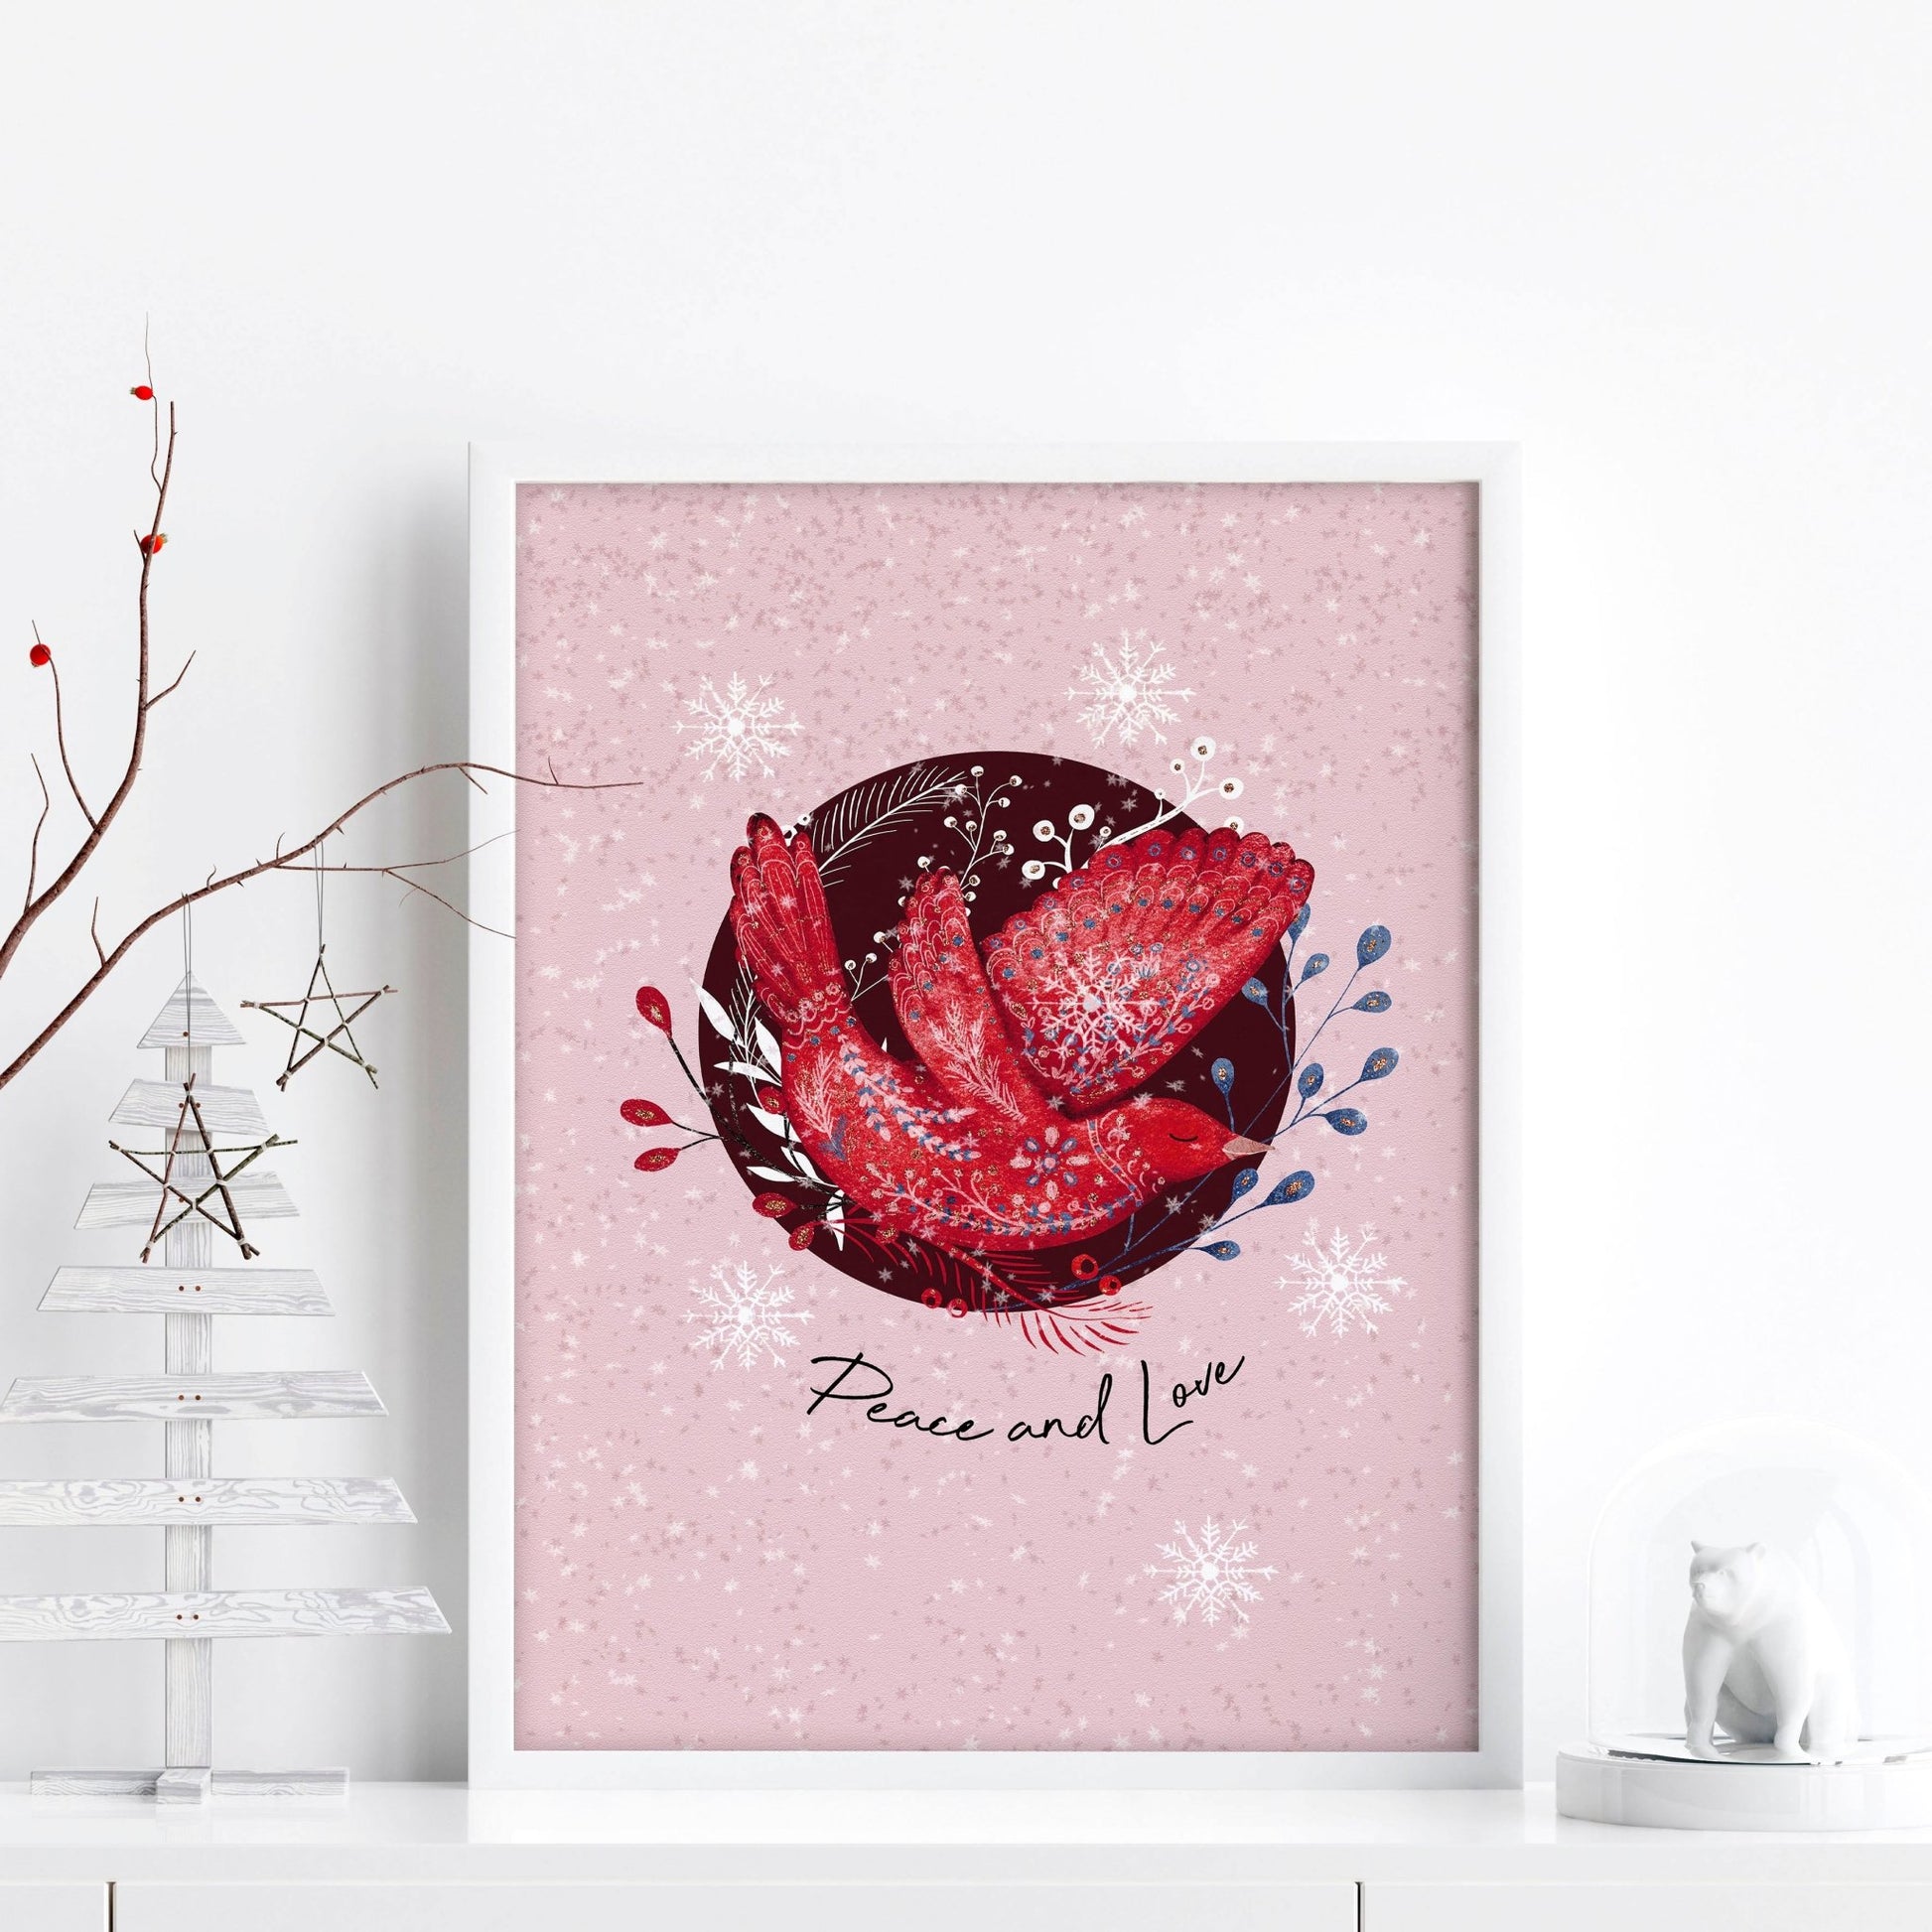 Scandi Christmas decor | wall art print - About Wall Art